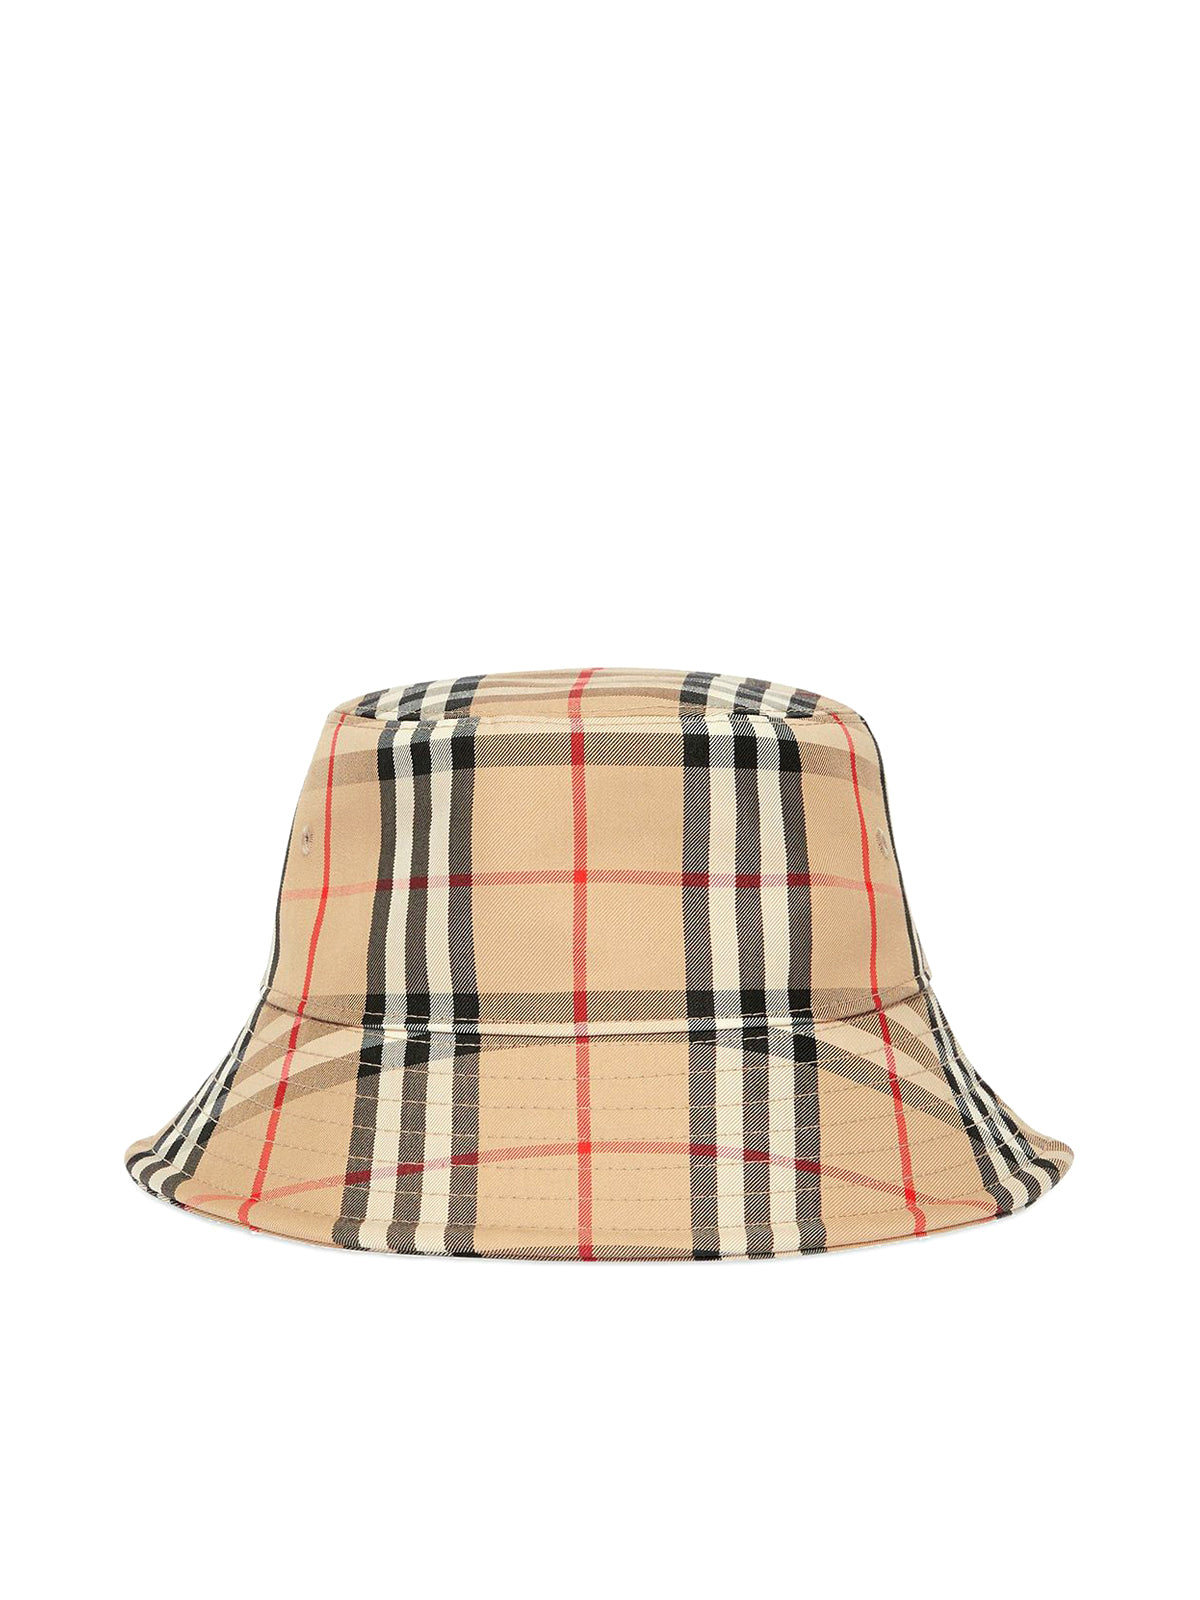 Vintage Check bucket hat